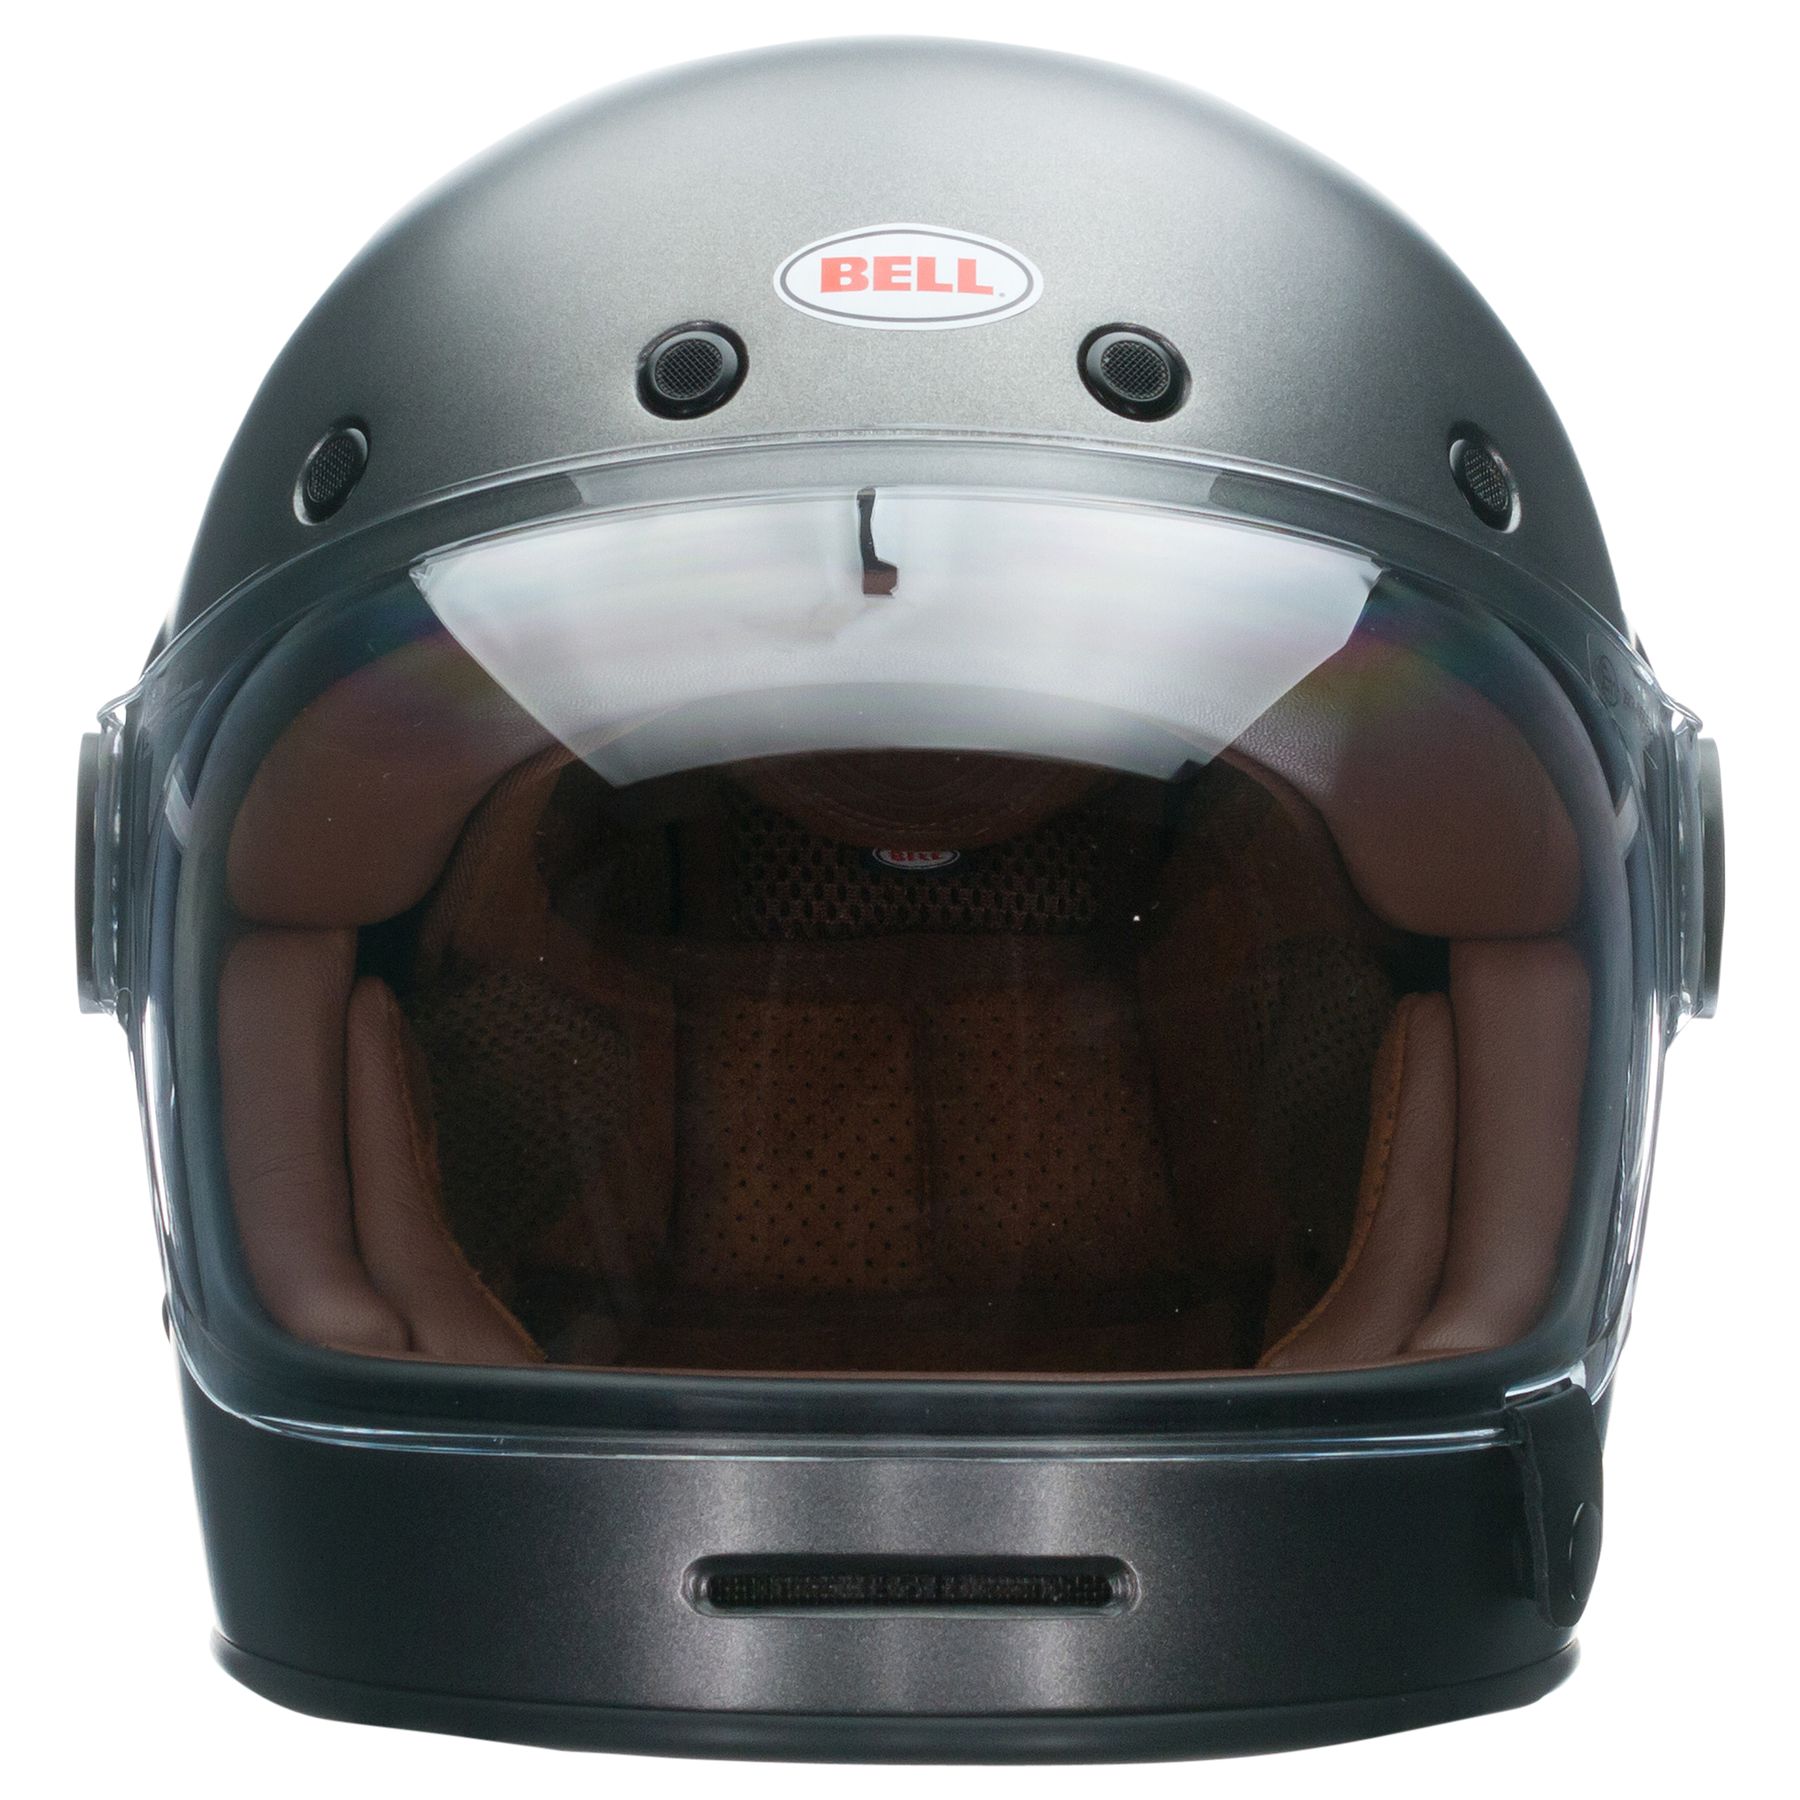 Bell Bullitt Retro Helmet